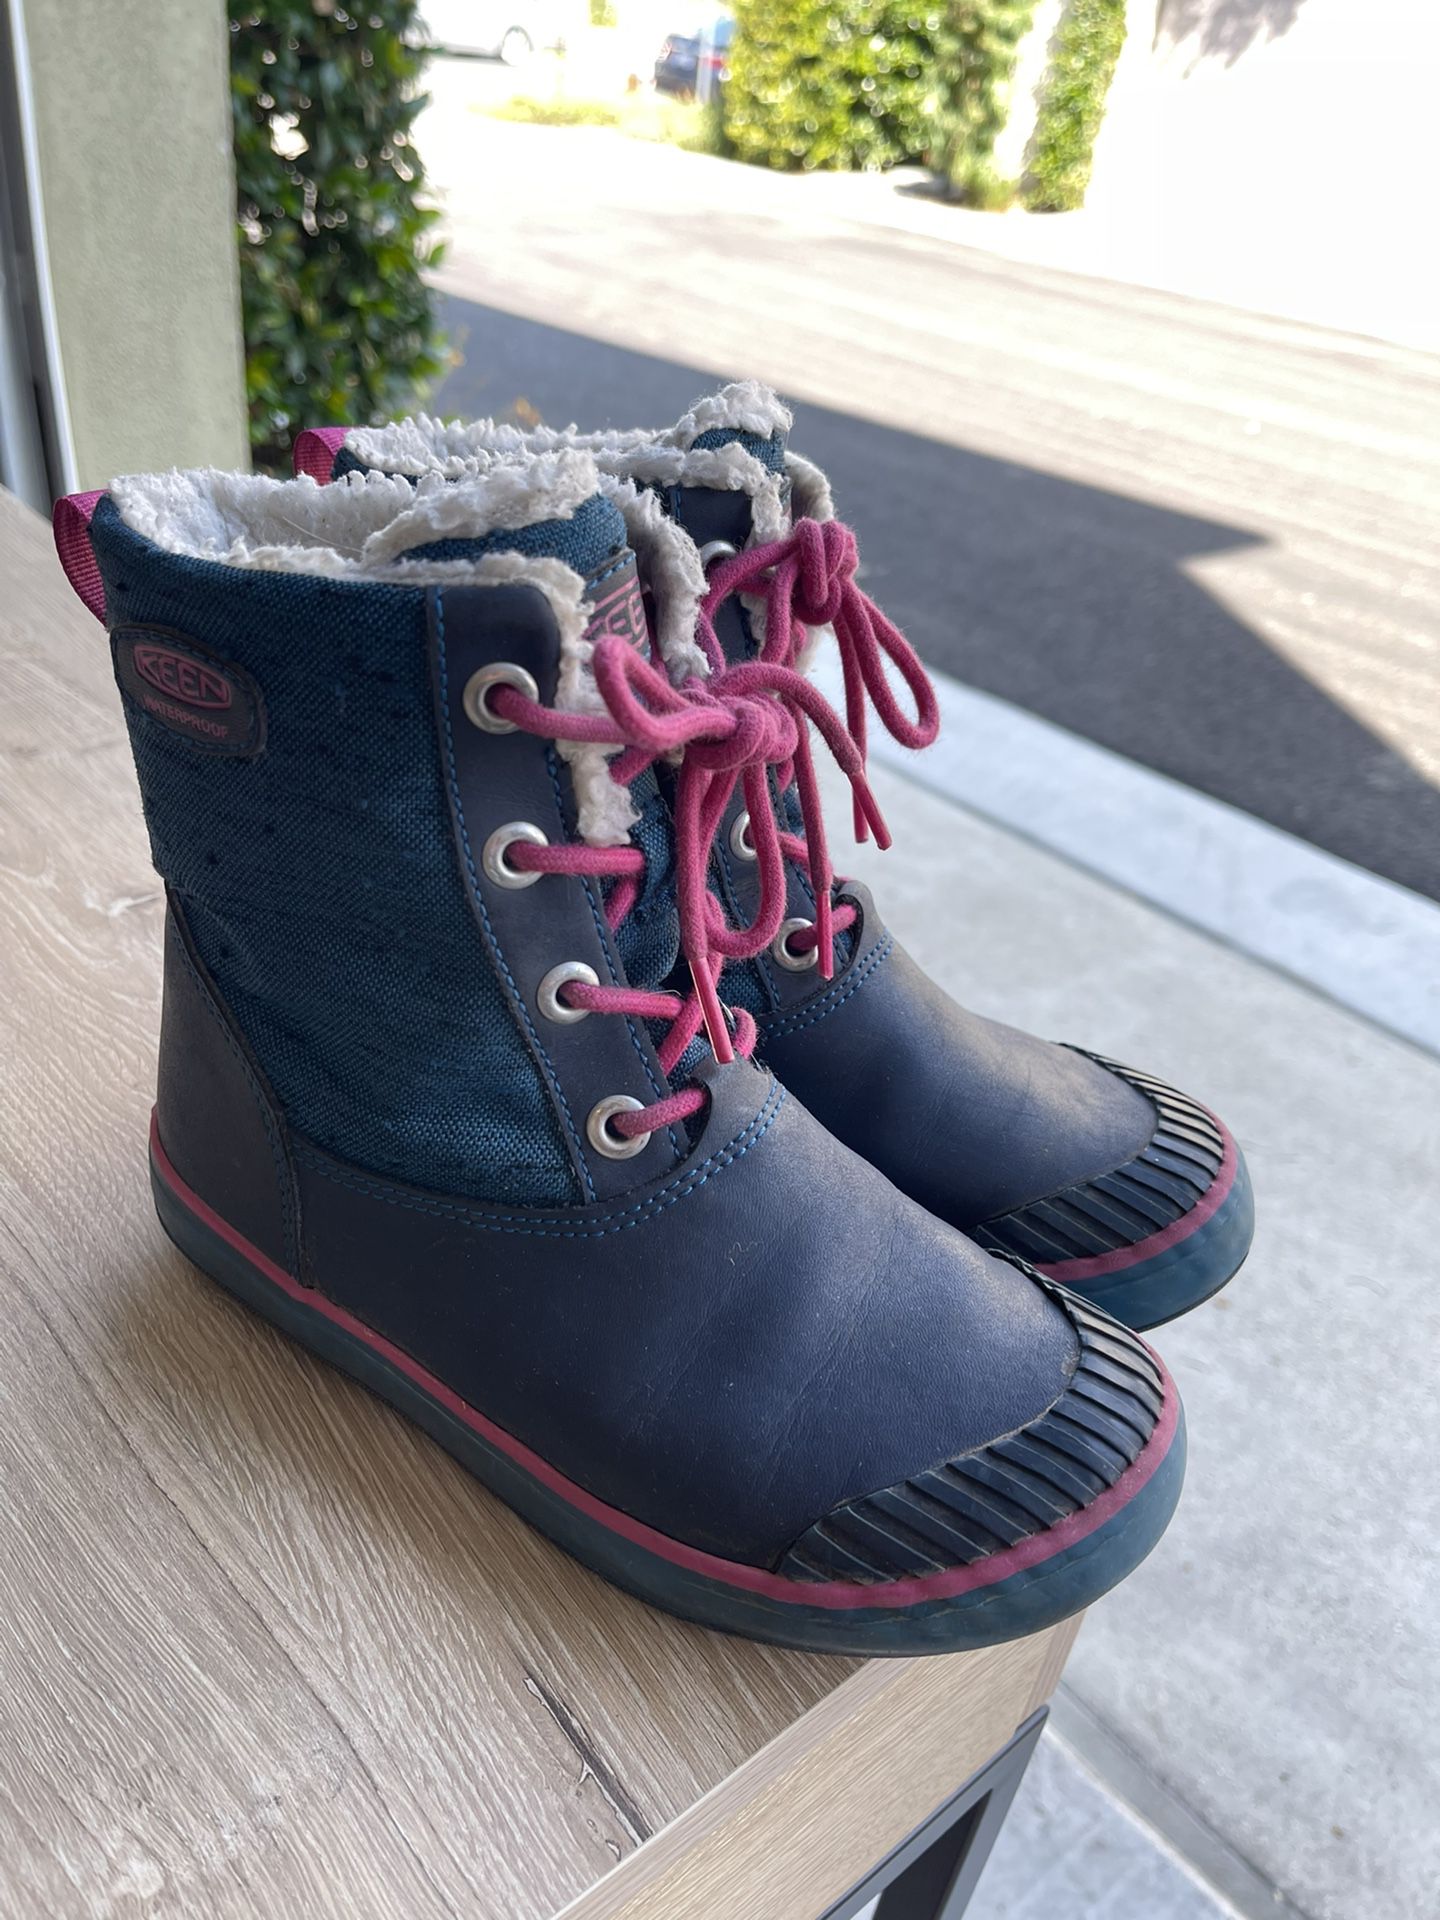 Keen - Girls Size 2 Boots